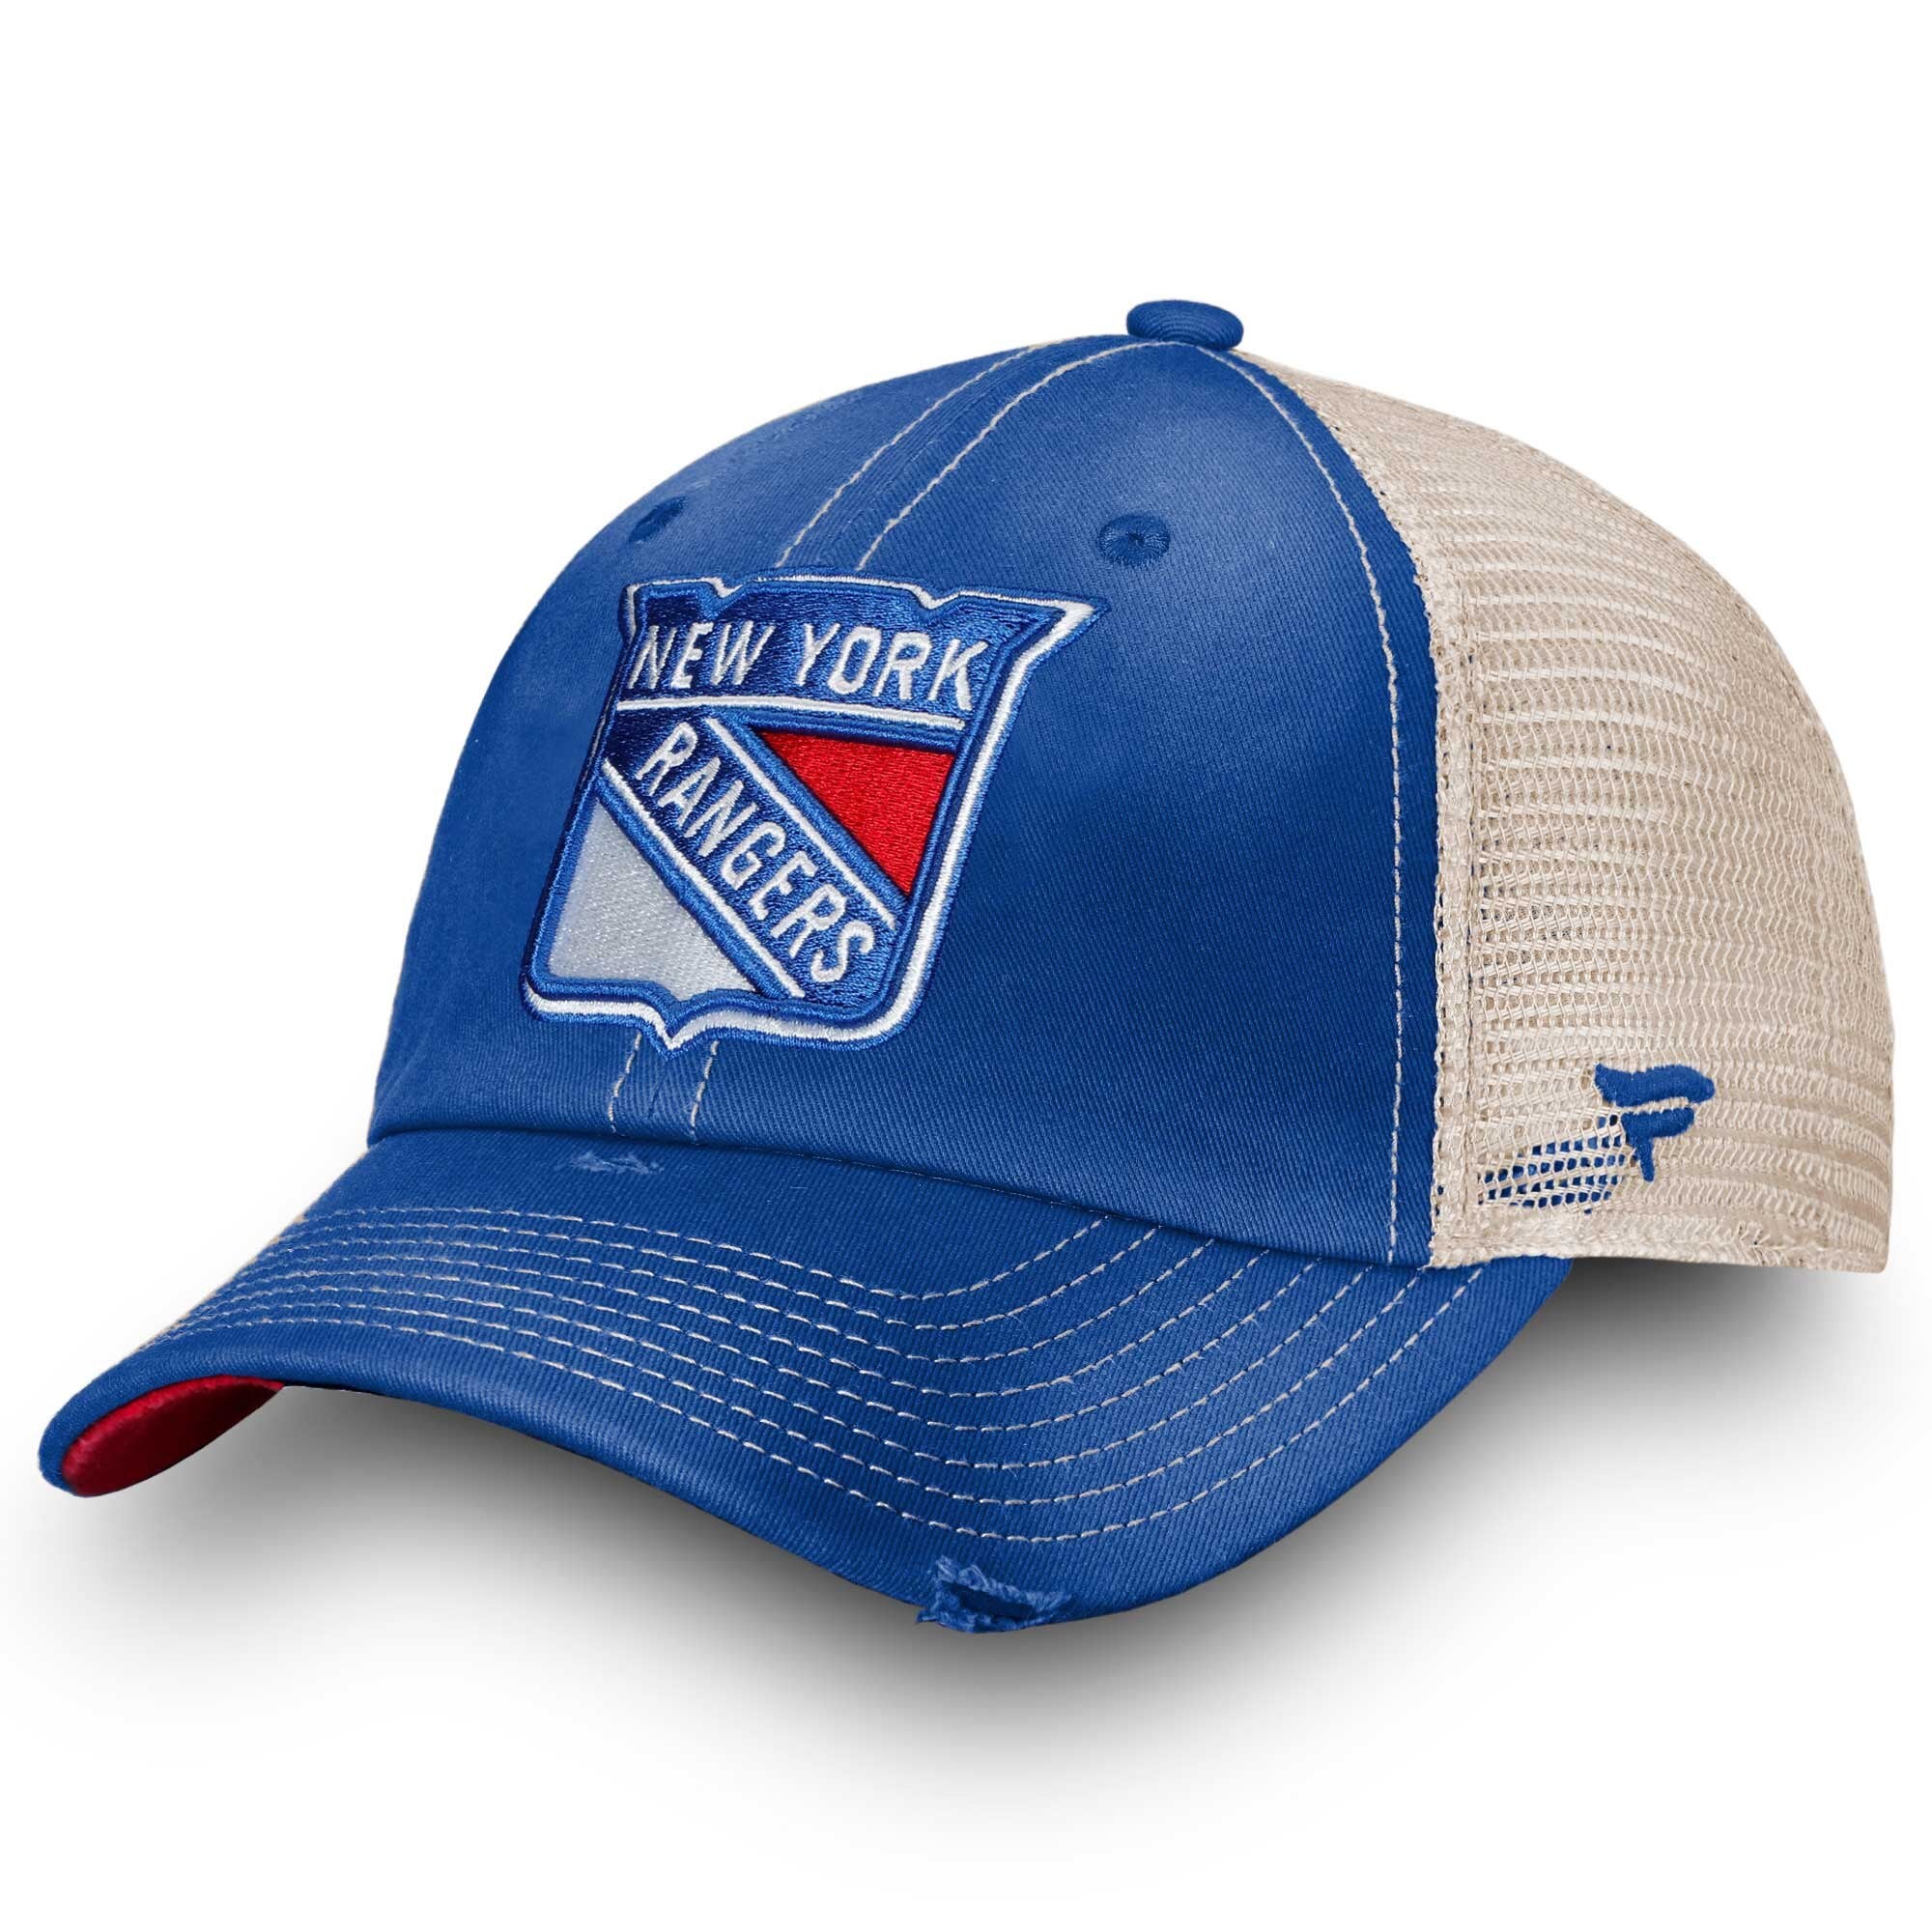 New York Rangers Playoffs Gear, Rangers Jerseys, New York Rangers Hats,  Rangers Apparel